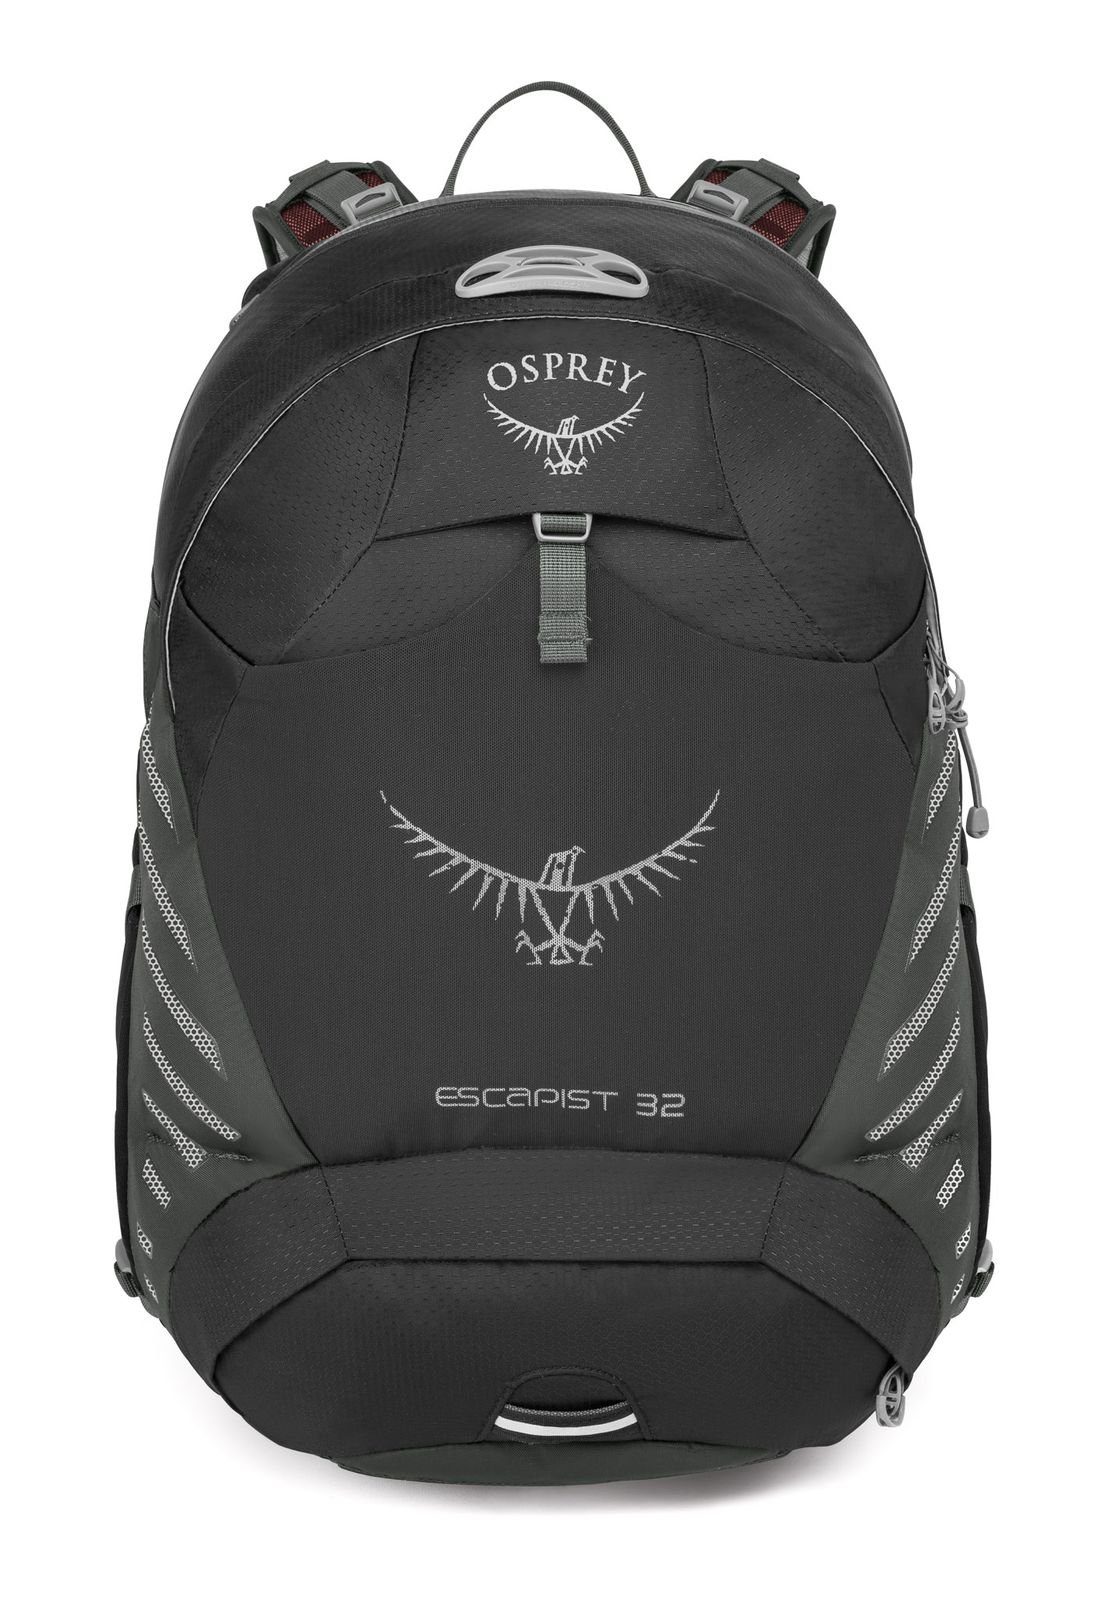 Osprey Rucksack online kaufen | OTTO